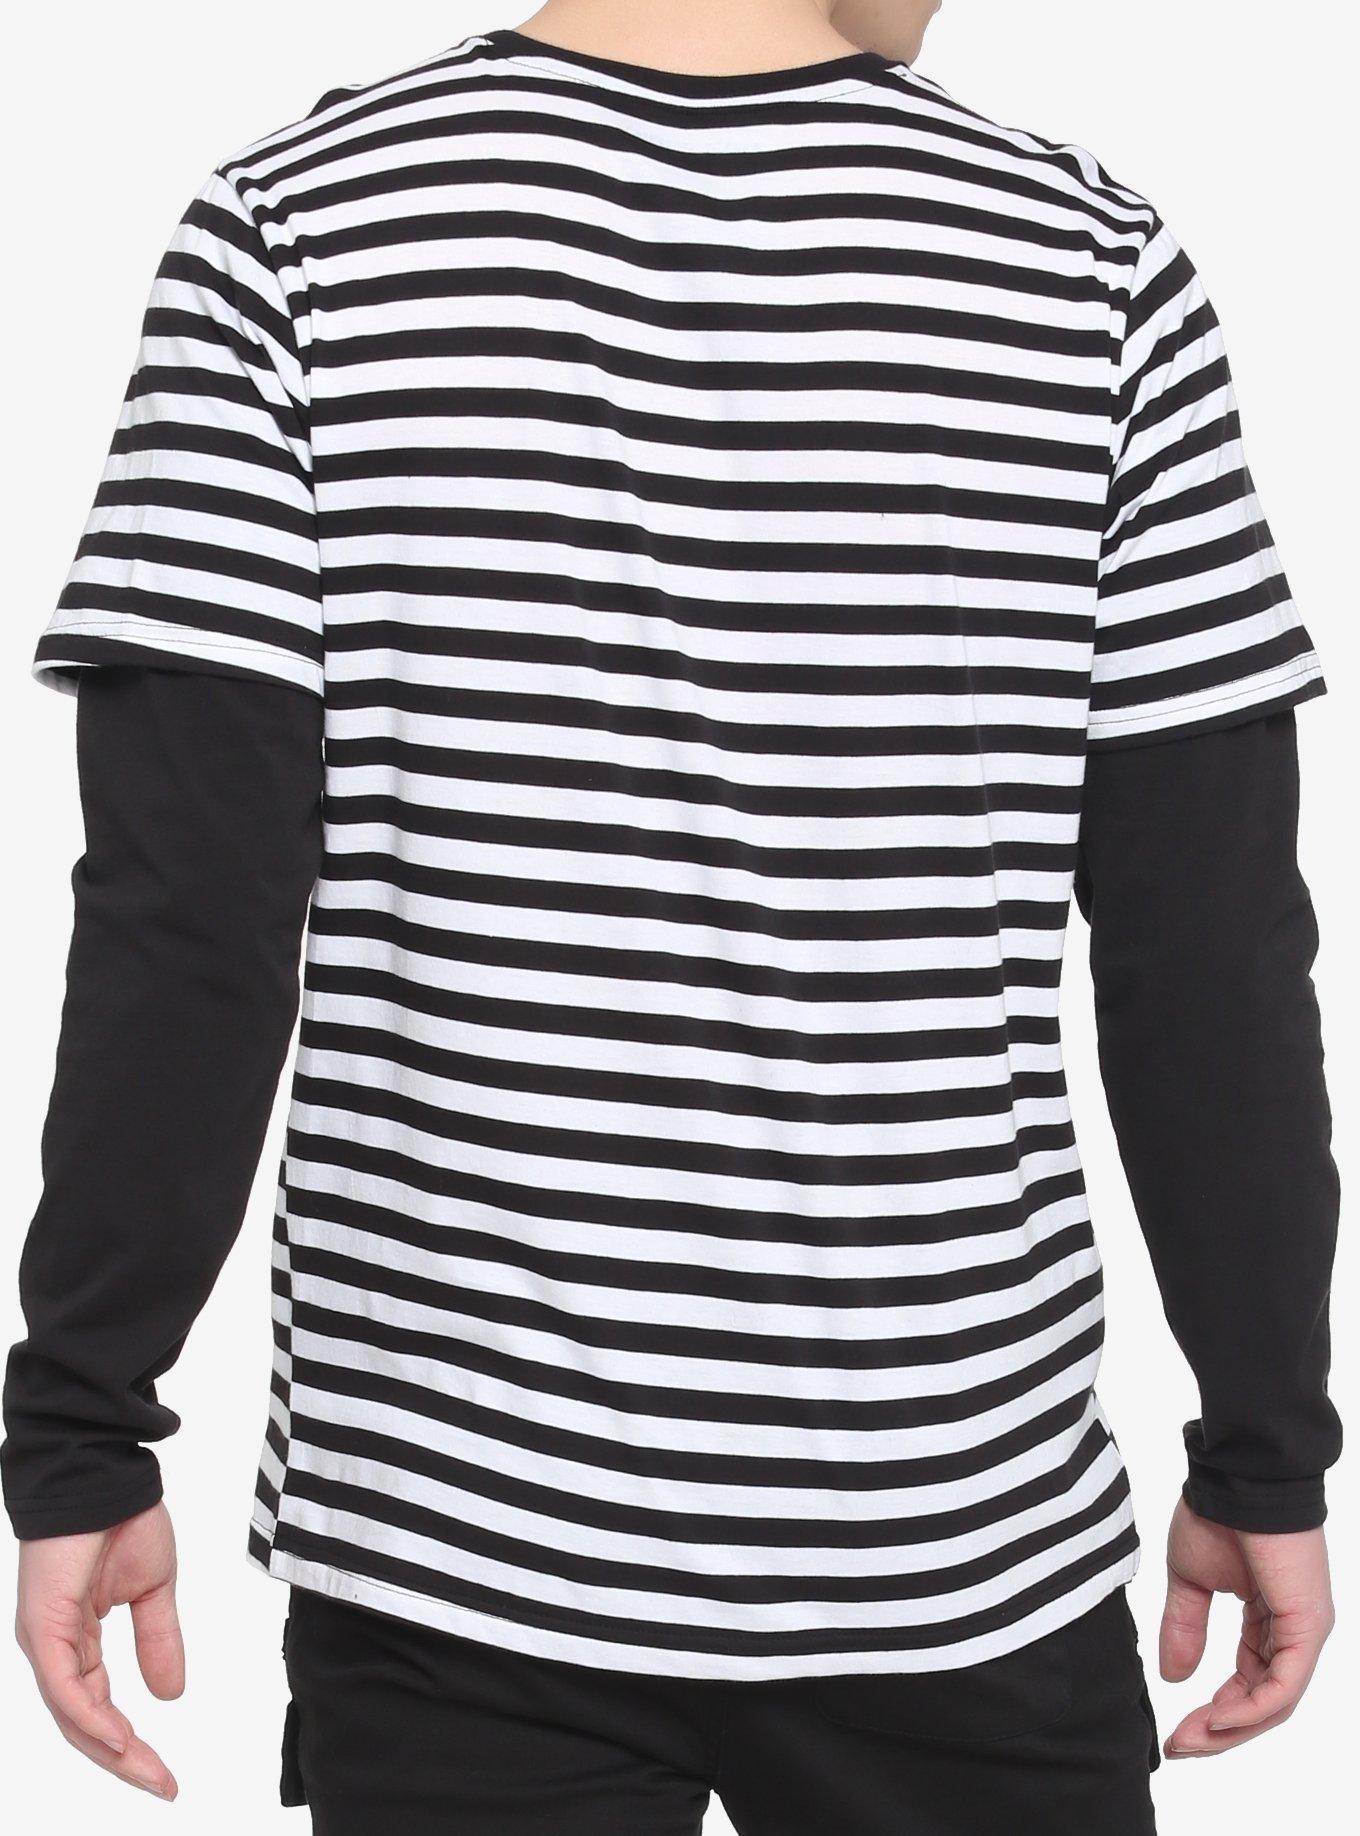 Black & White Stripe Twofer Long-Sleeve T-Shirt, BLACK  WHITE, alternate